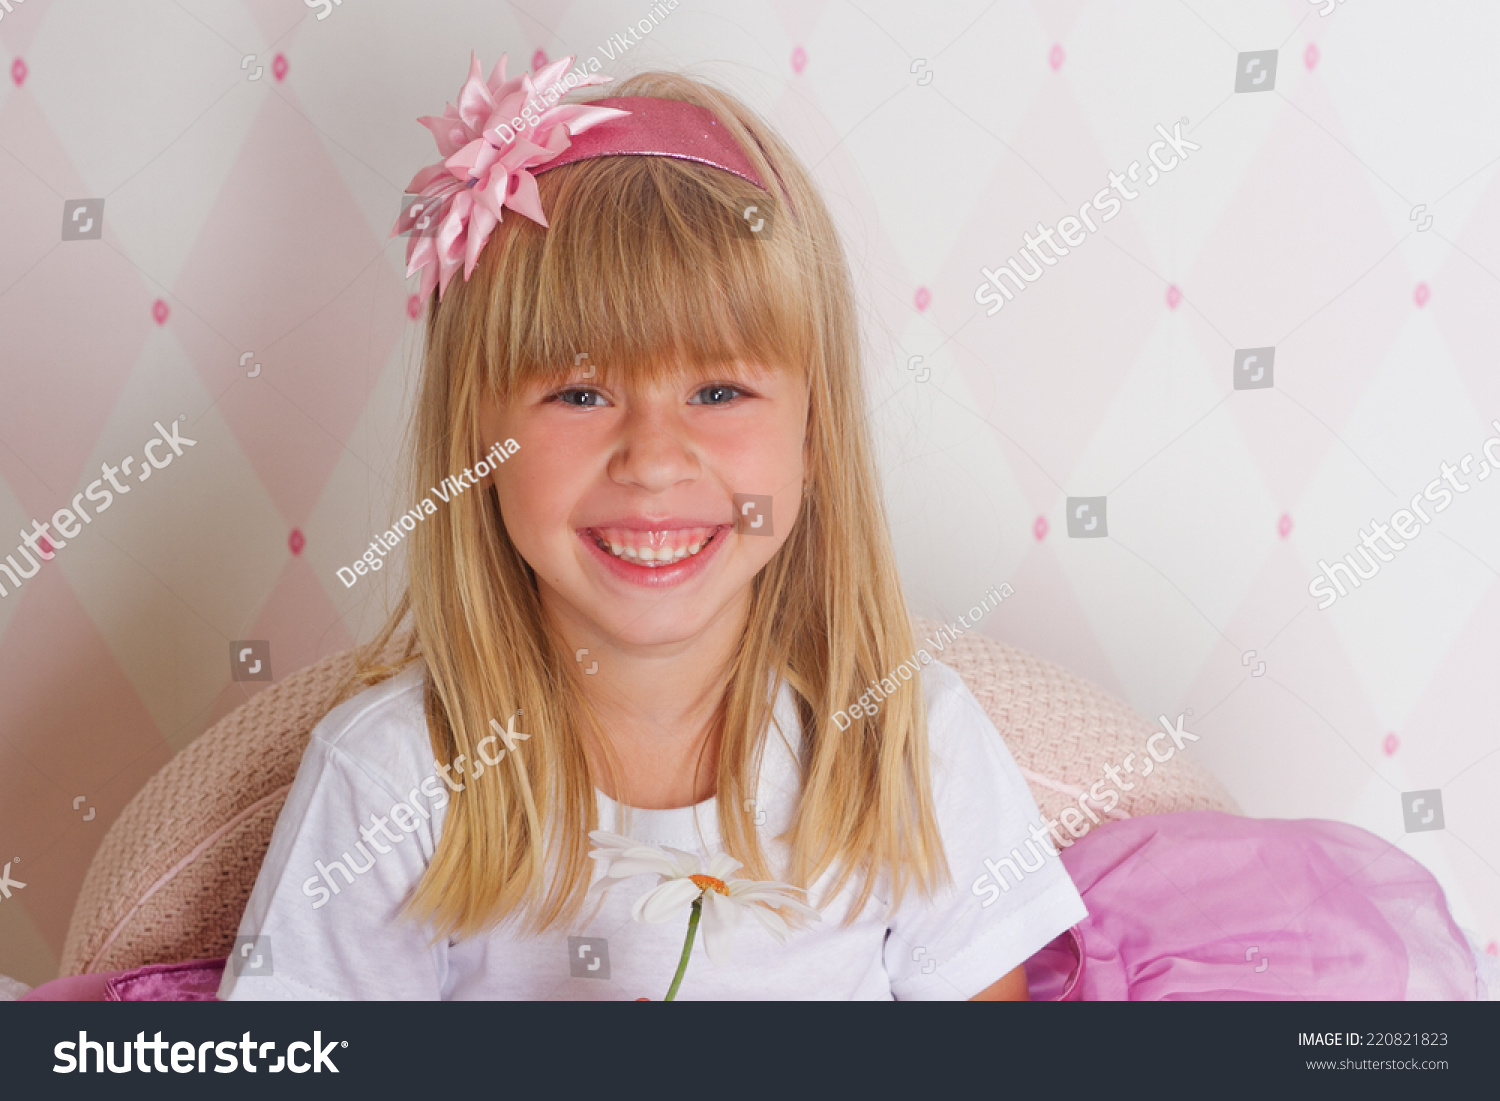 little girl princess chair